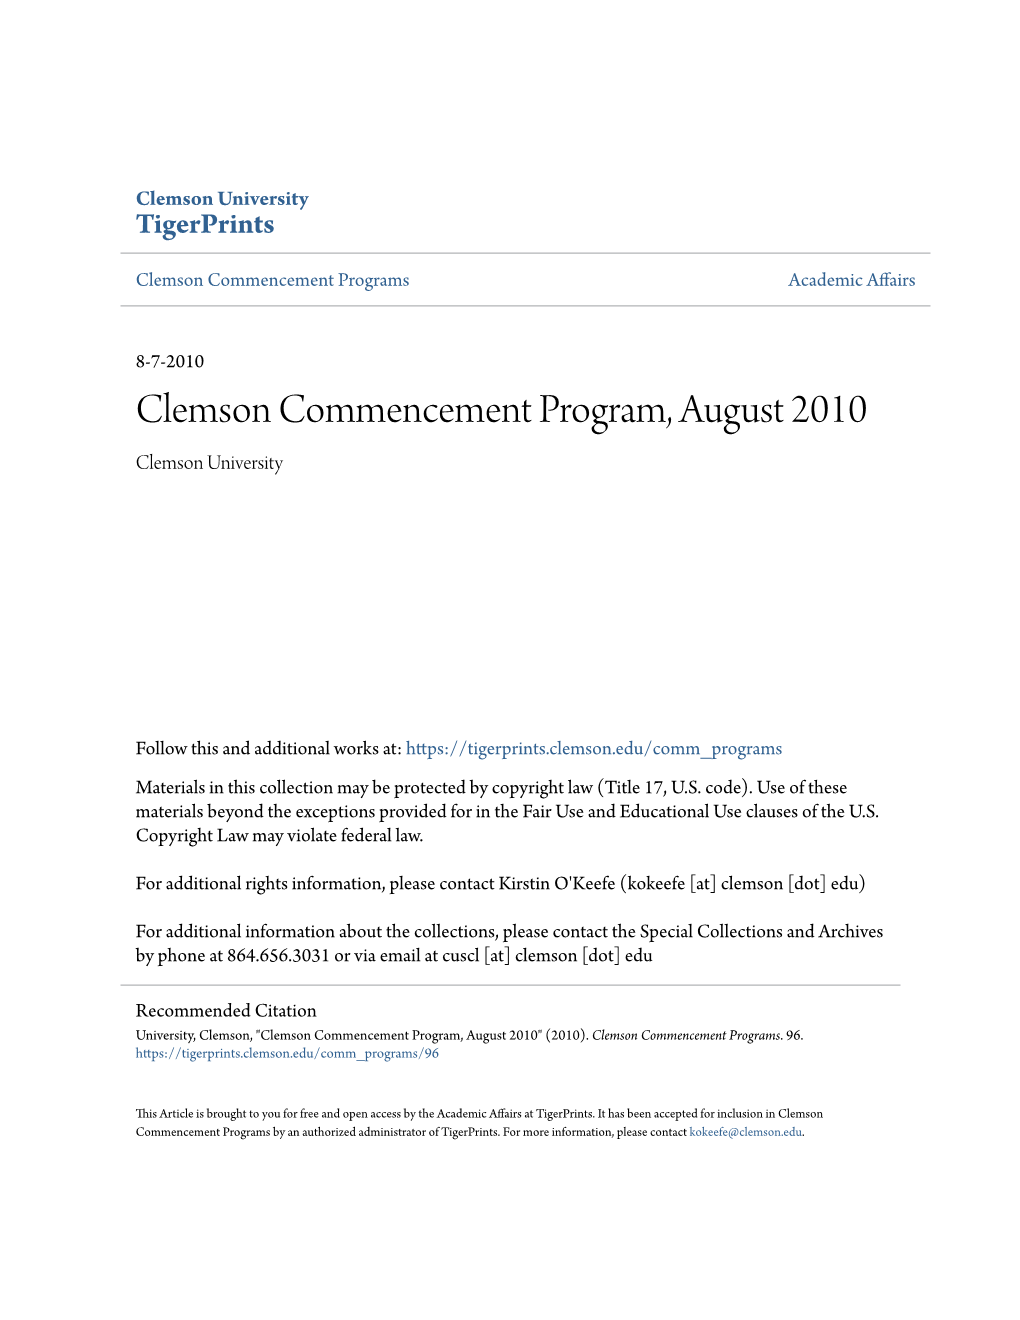 Clemson Commencement Program, August 2010 Clemson University